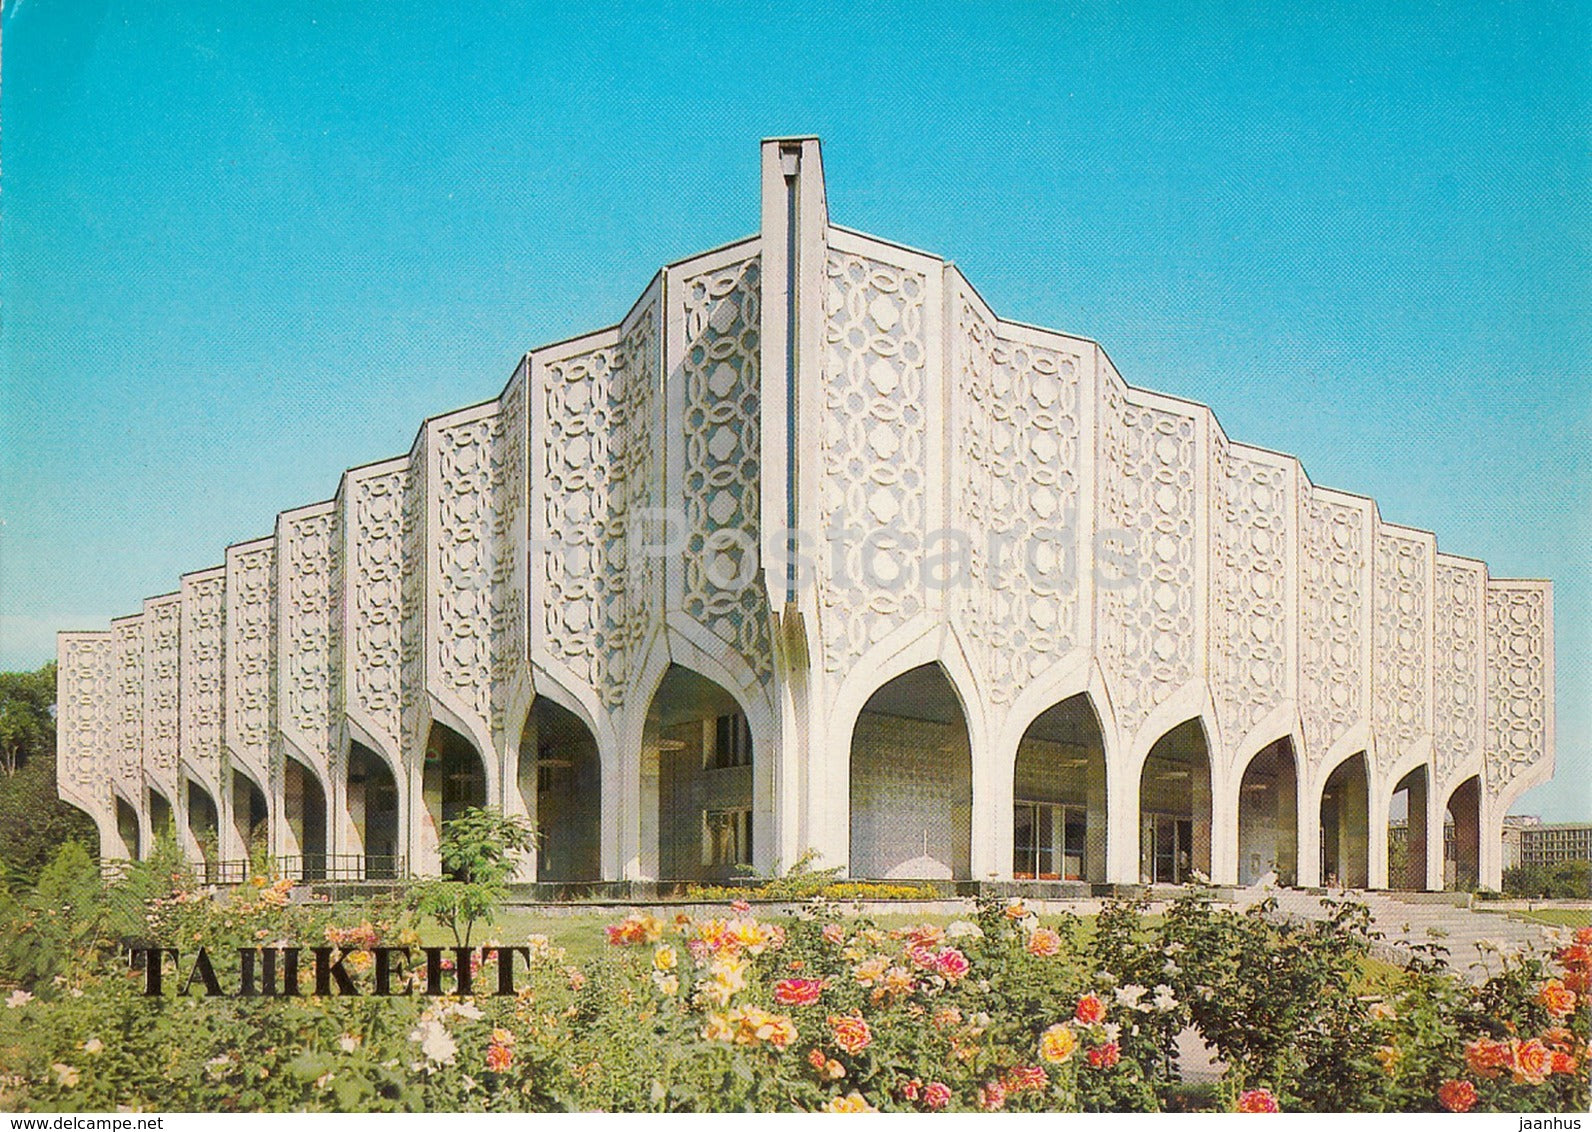 Tashkent - Exhibition Hall of the Uzbek Artists Union - 1983 - Uzbekistan USSR - unused - JH Postcards